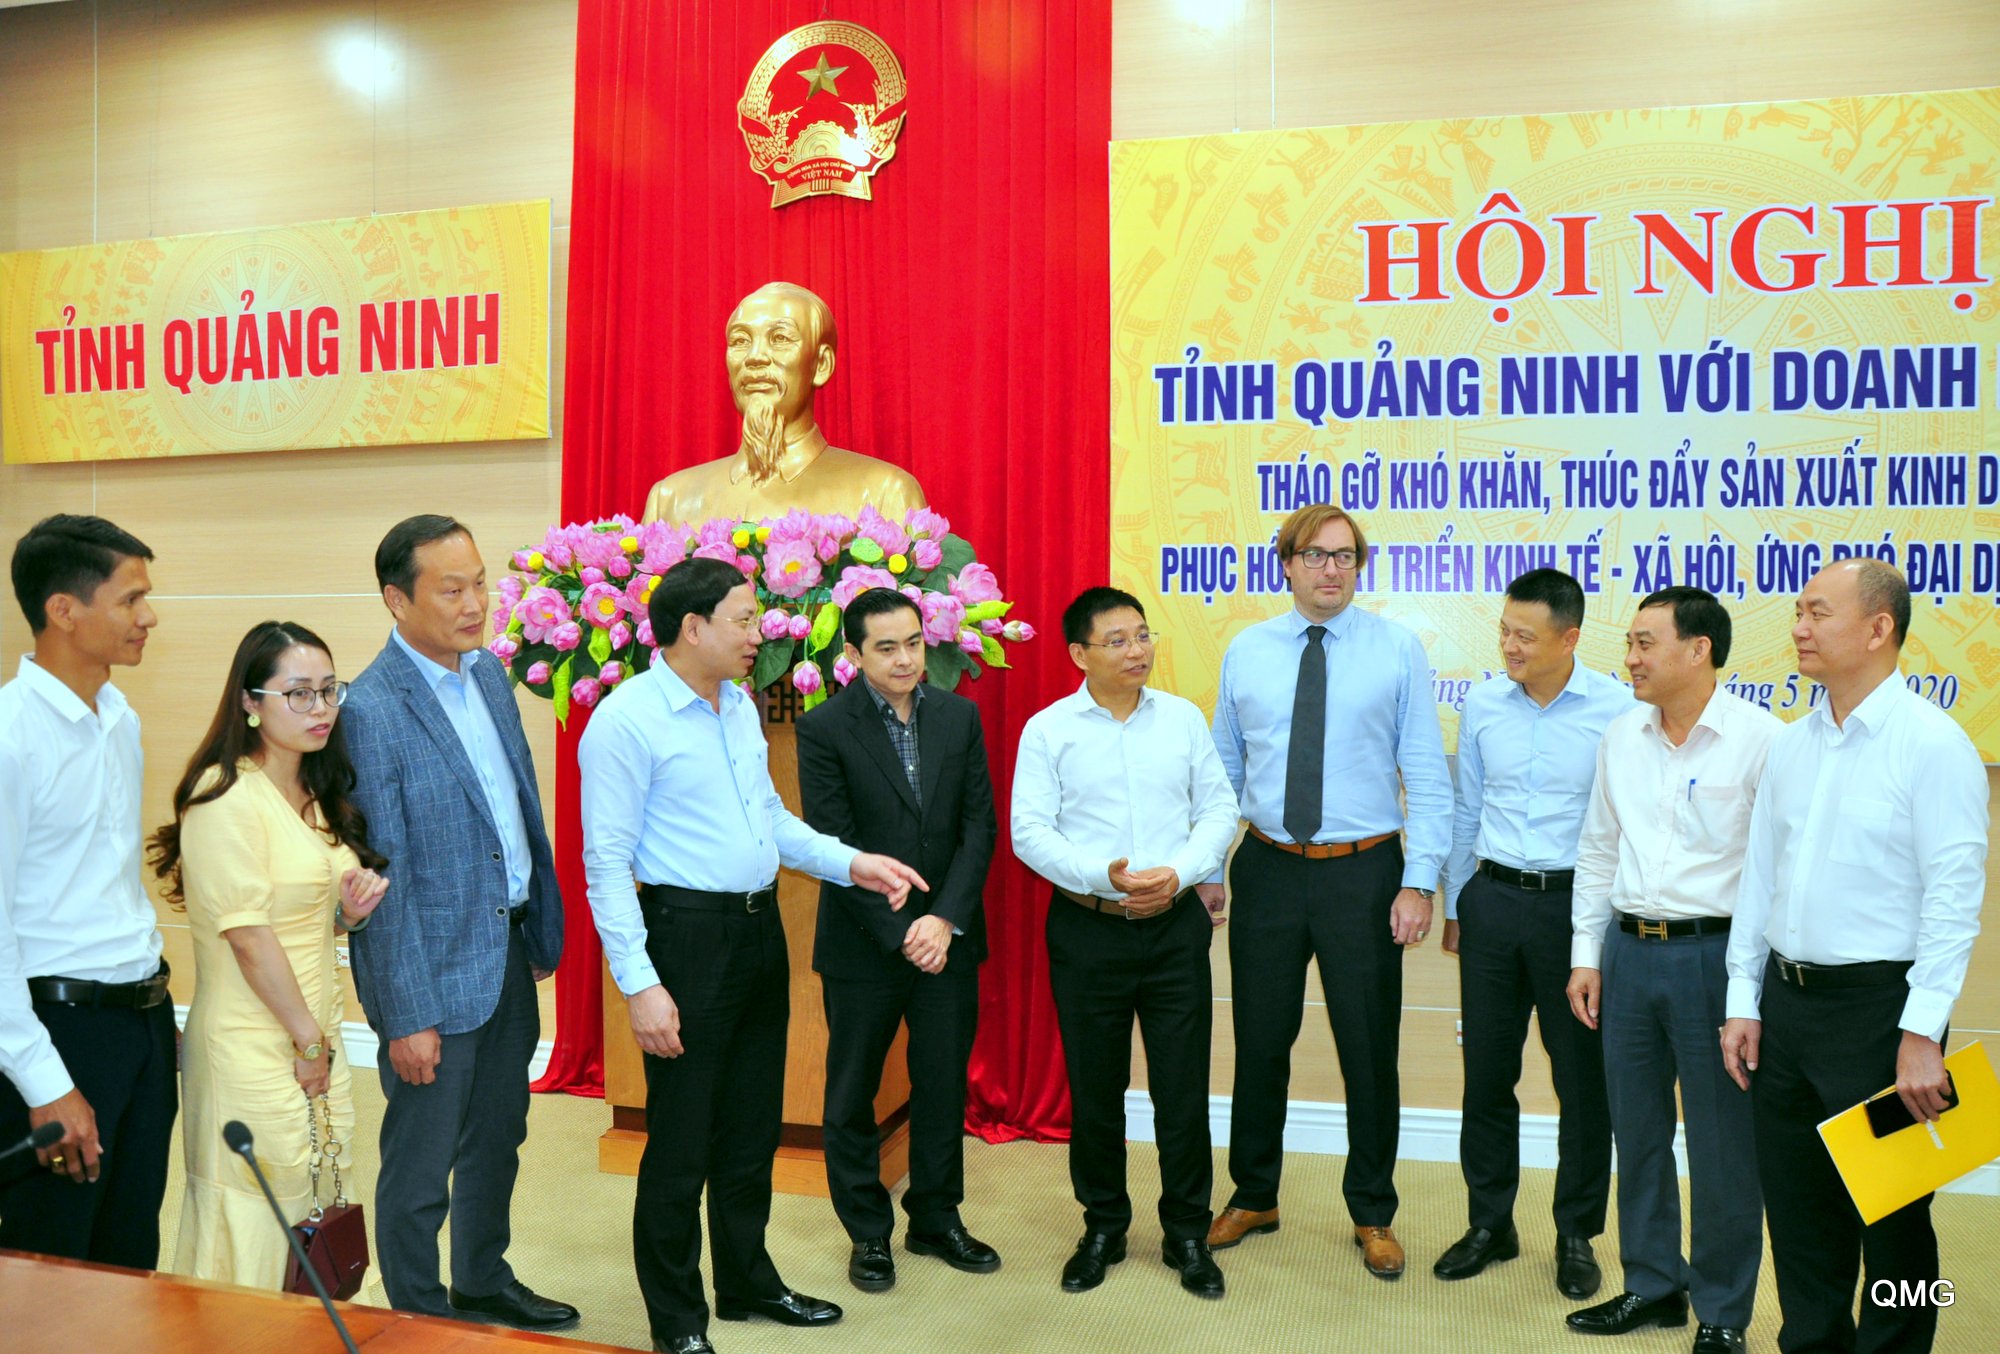 Các đồng chí lãnh đạo tỉnh trò chuyện với đại diện các doanh nghiệp bên lề lễ công bố DDCI tỉnh Quảng Ninh năm 2019 vừa được tổ chức ngày 